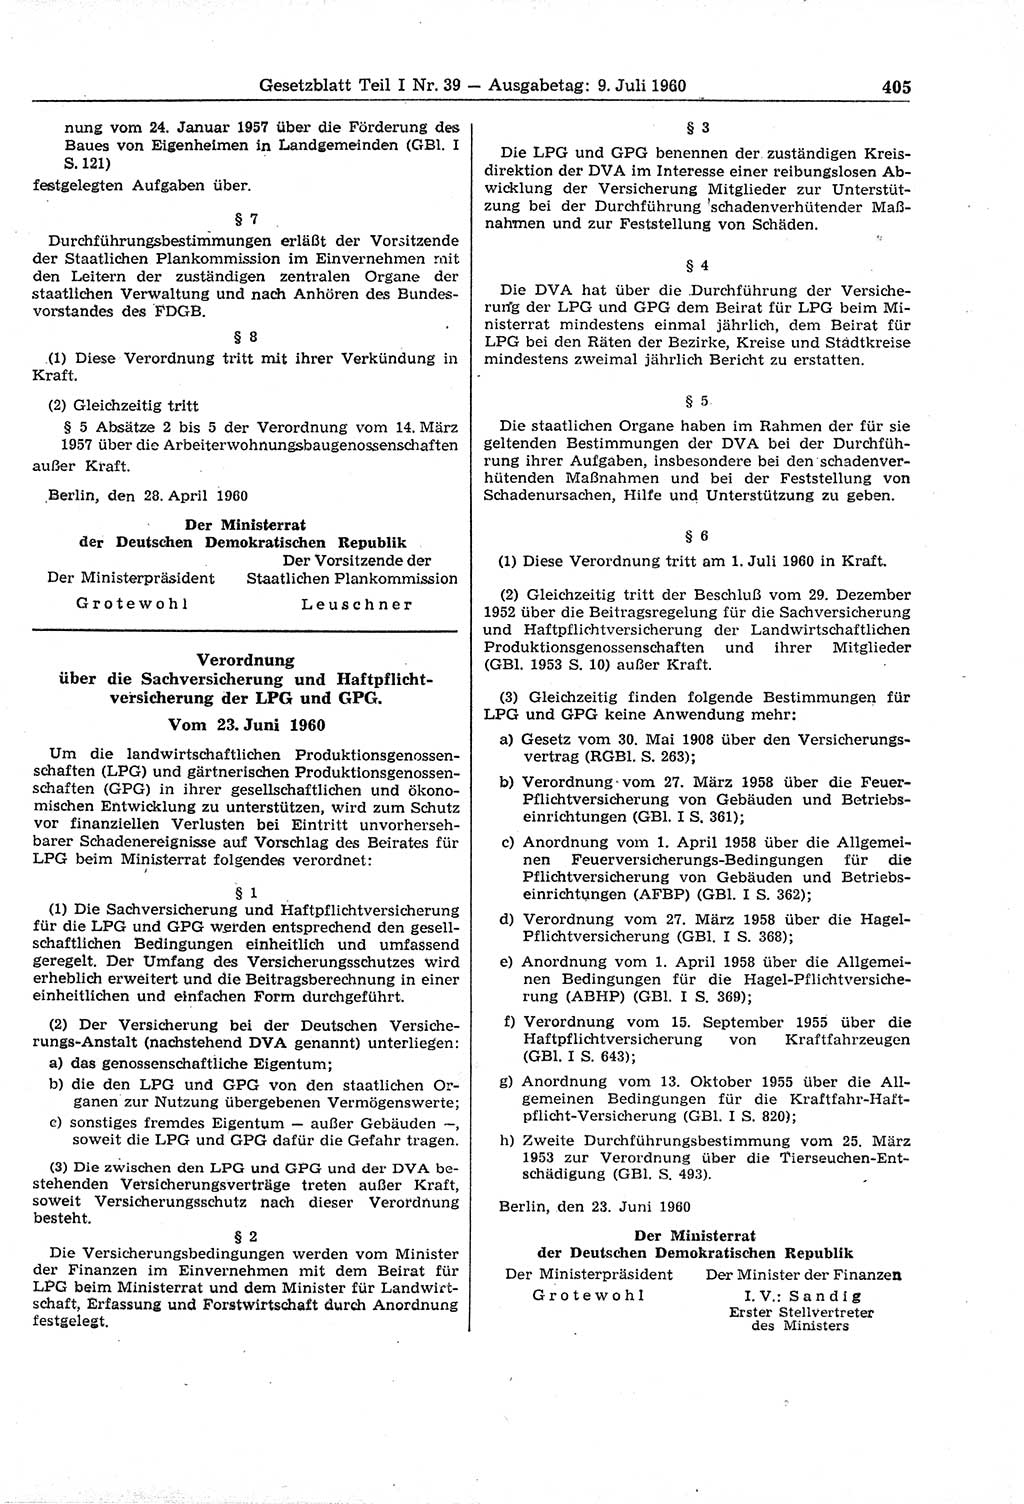 Gesetzblatt (GBl.) der Deutschen Demokratischen Republik (DDR) Teil Ⅰ 1960, Seite 405 (GBl. DDR Ⅰ 1960, S. 405)